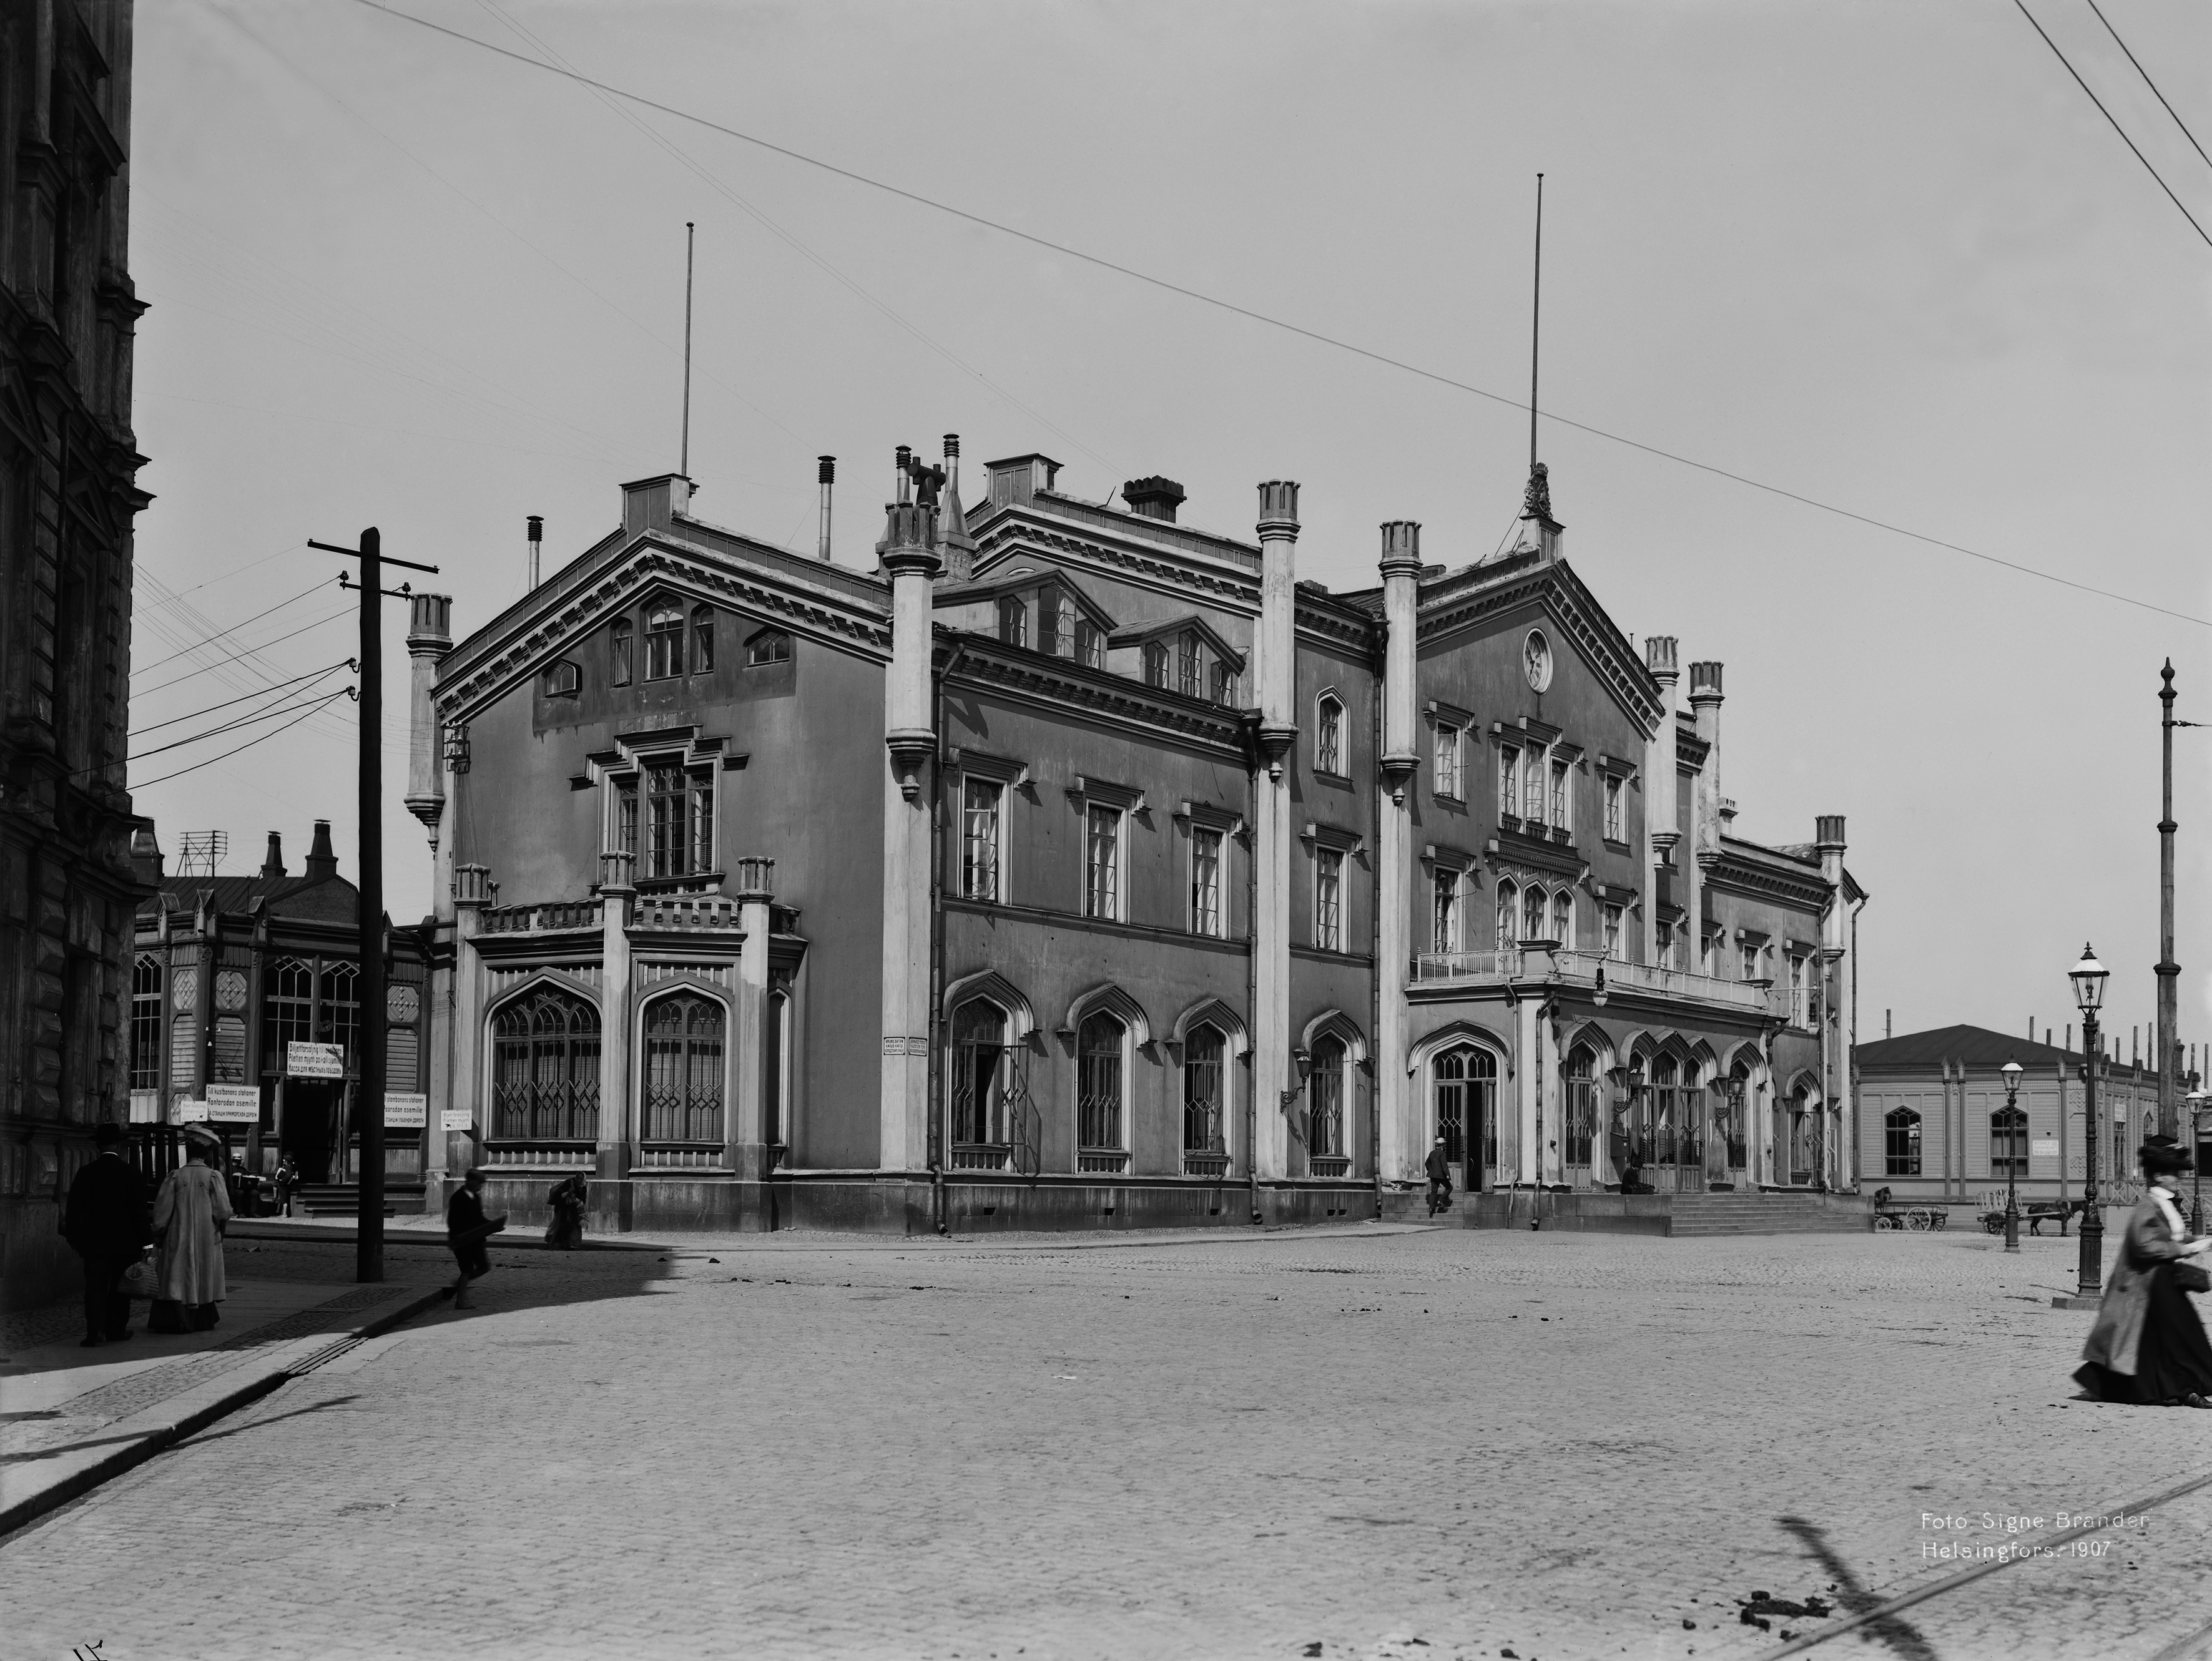 Helsingin rautatieasema Kaivokadun ja Hakasalmenkadun (Keskuskatu) kulmasta nähtynä.  Vanha Rautatieasema (1862) purettiin uuden Eliel Saarisen suunnitteleman (valmistui 1918) asemarakennuksen tieltä.